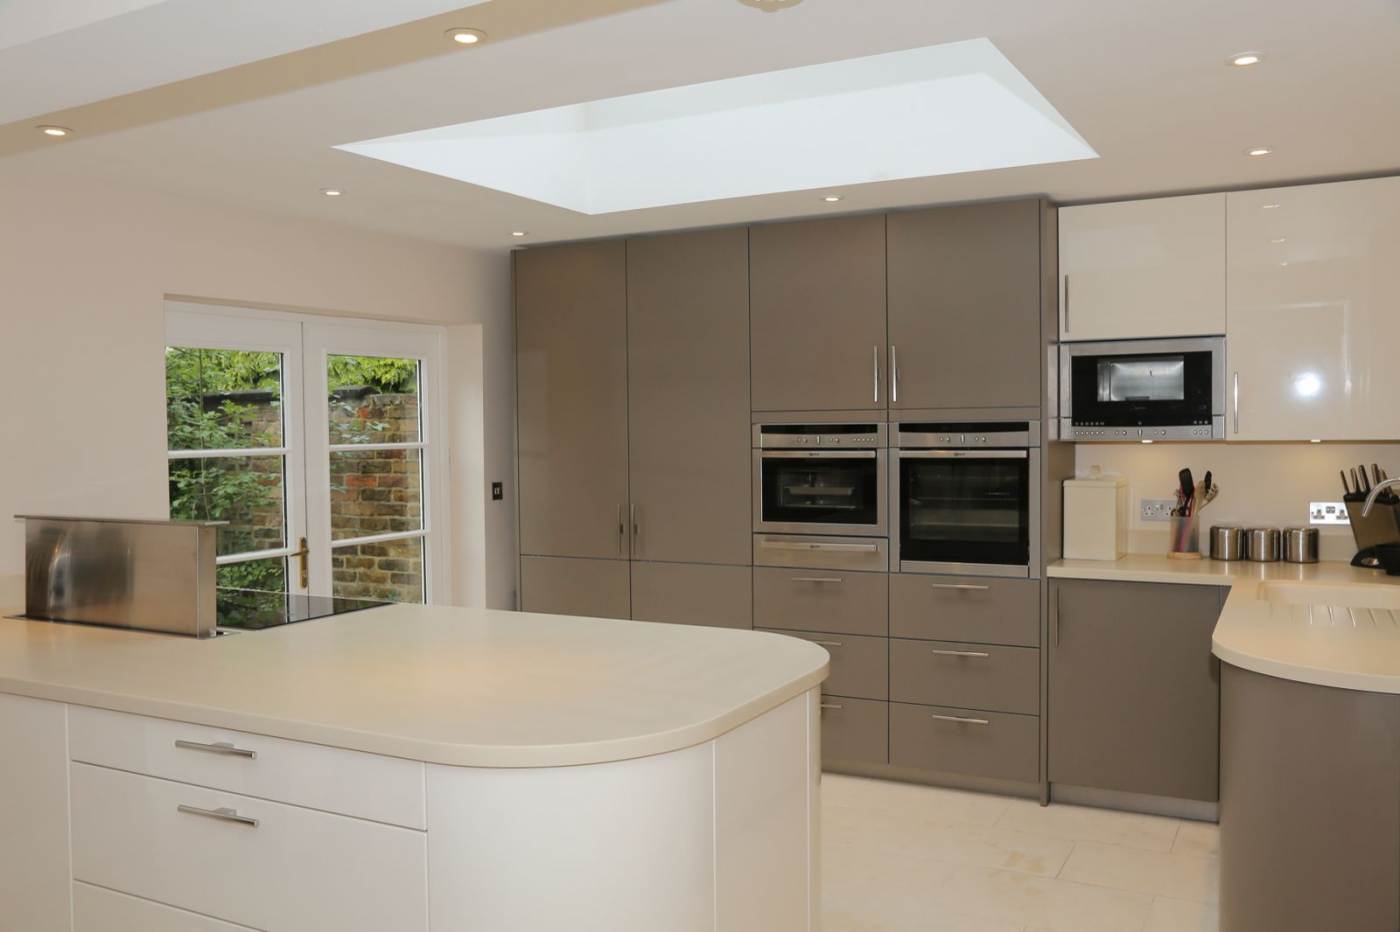 light beige kitchen design in minimalism style